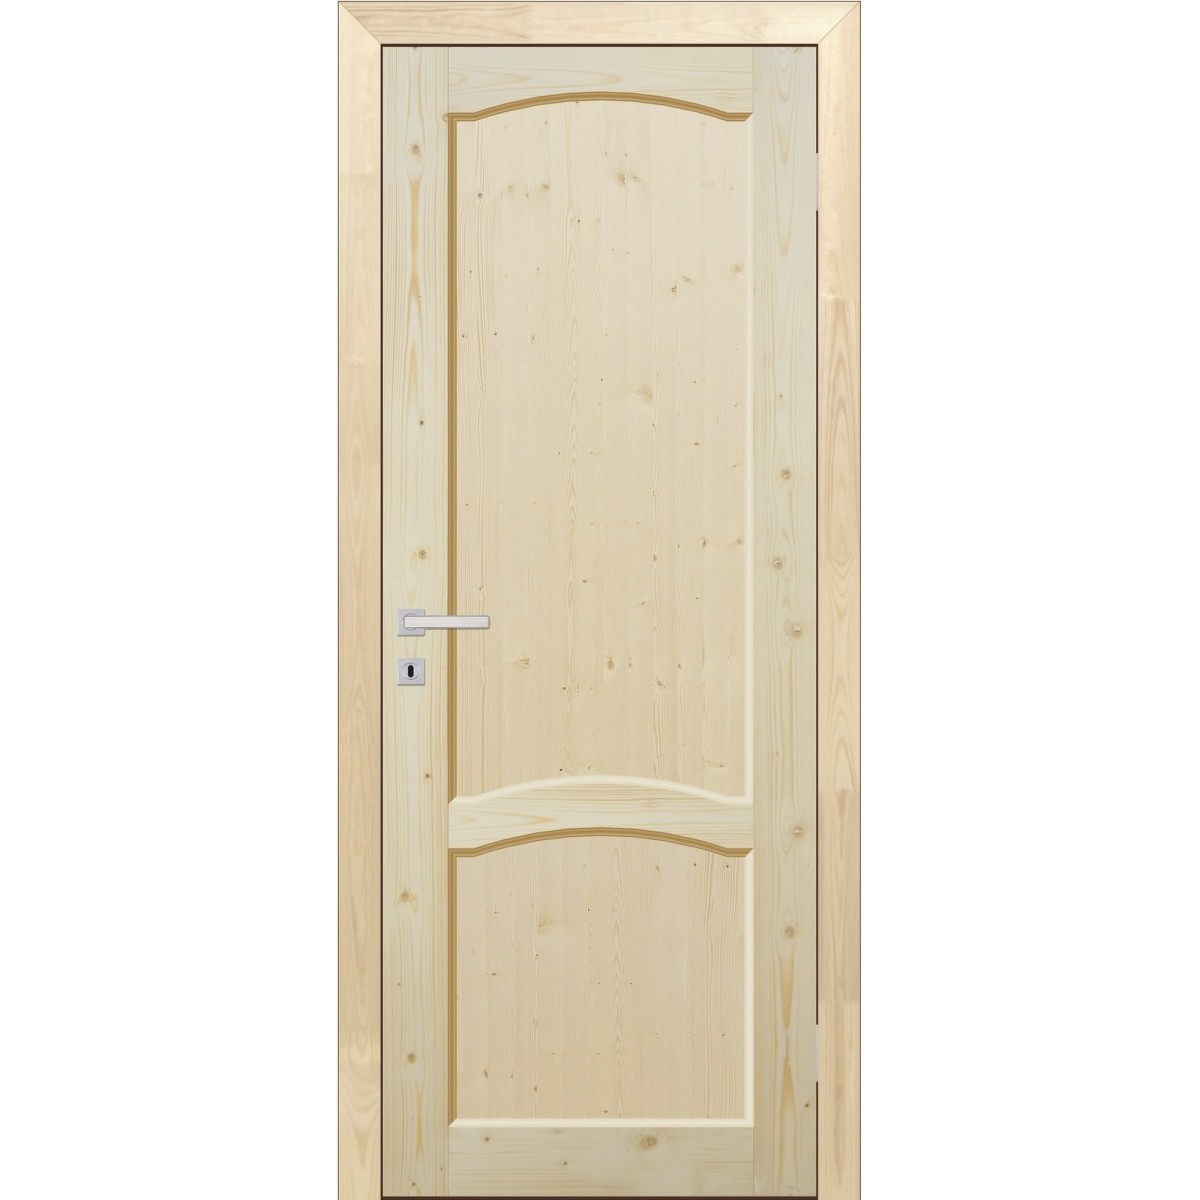 Дверь межкомнатная глухая 90x200 см, массив хвои, цвет натуральный